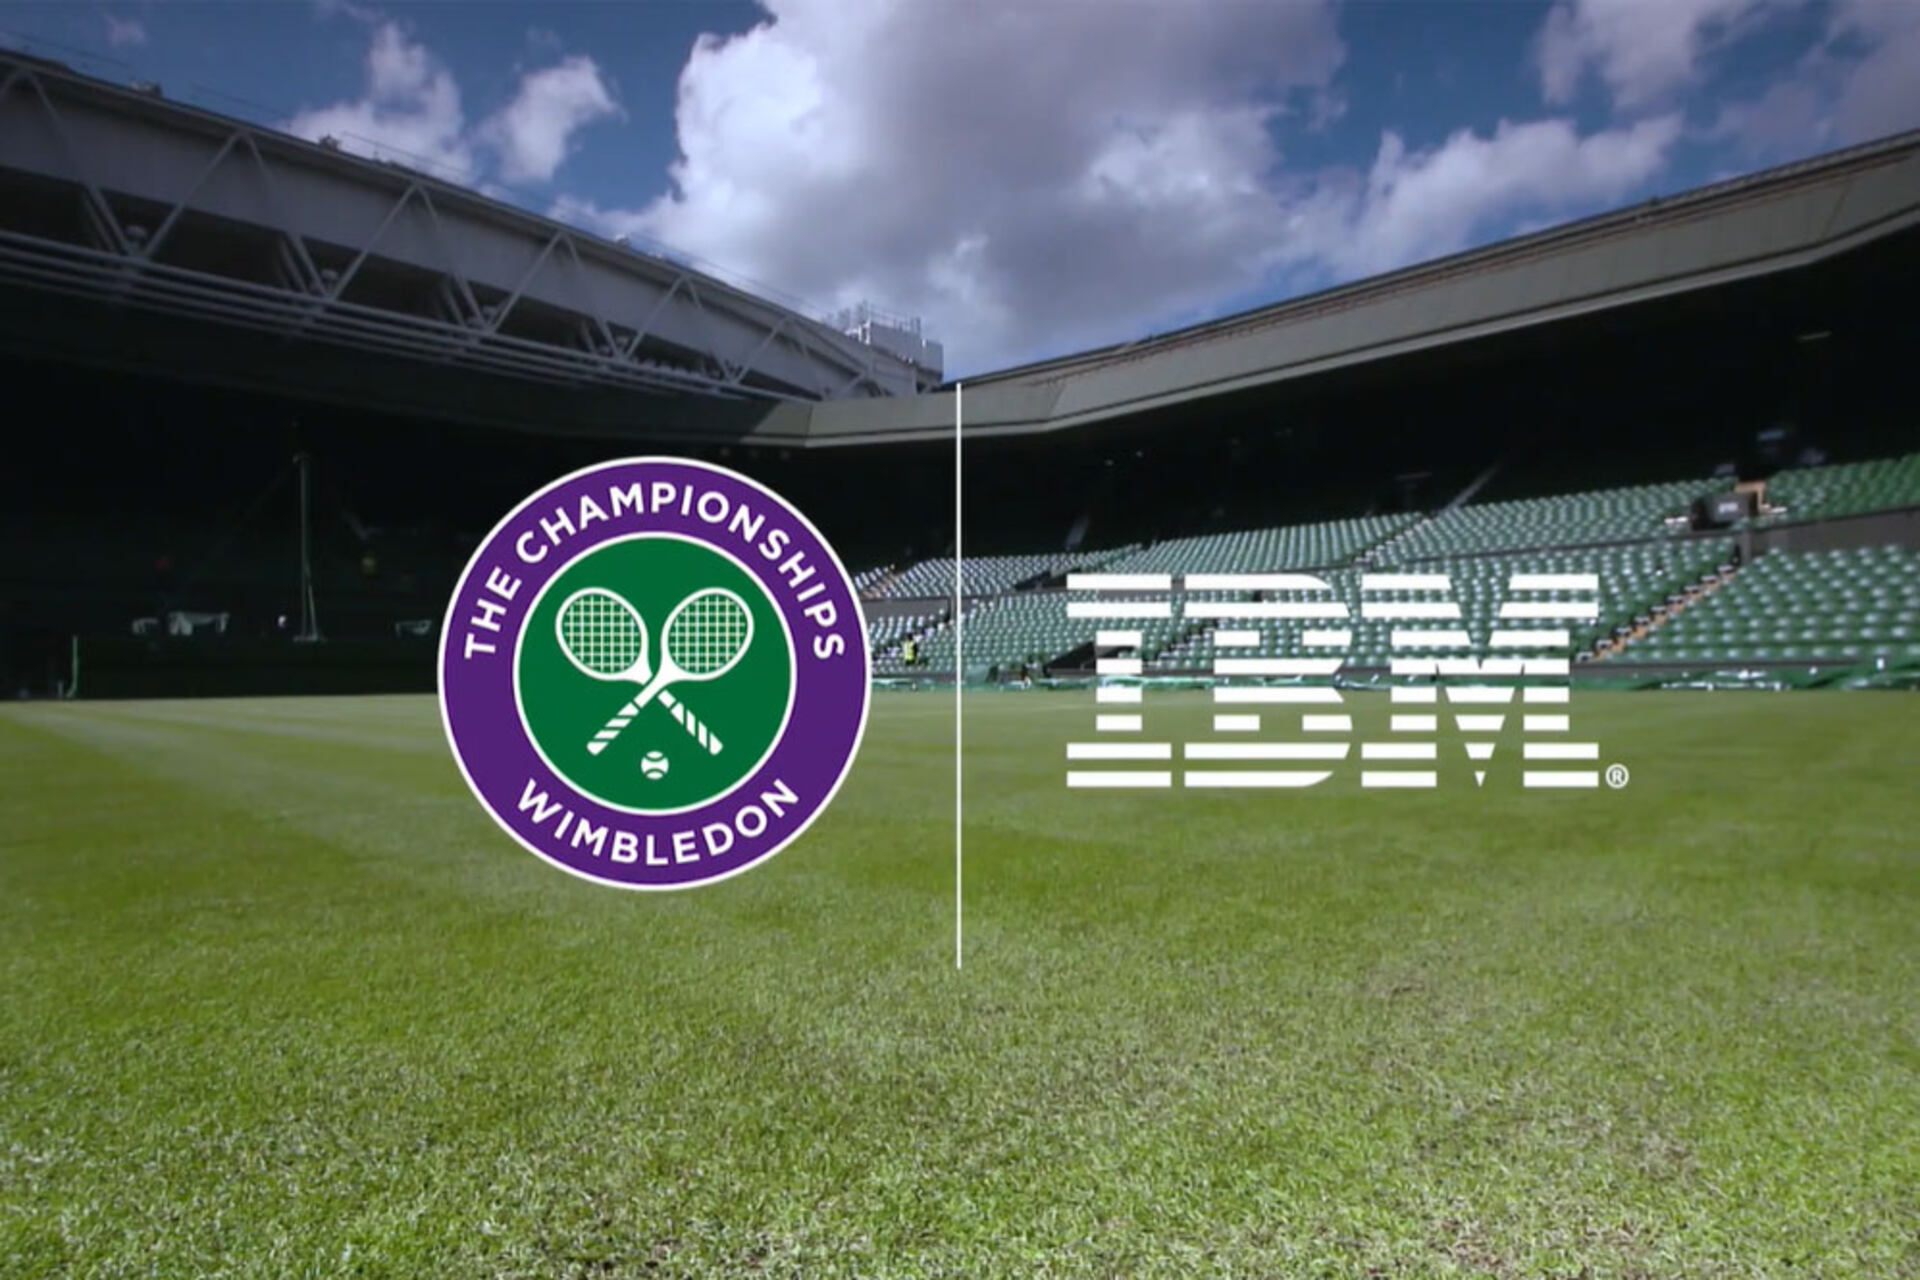 IBM e Wimbledon: la partnership tra IBM e Wimbledon è un'unione che trasforma il mondo del tennis